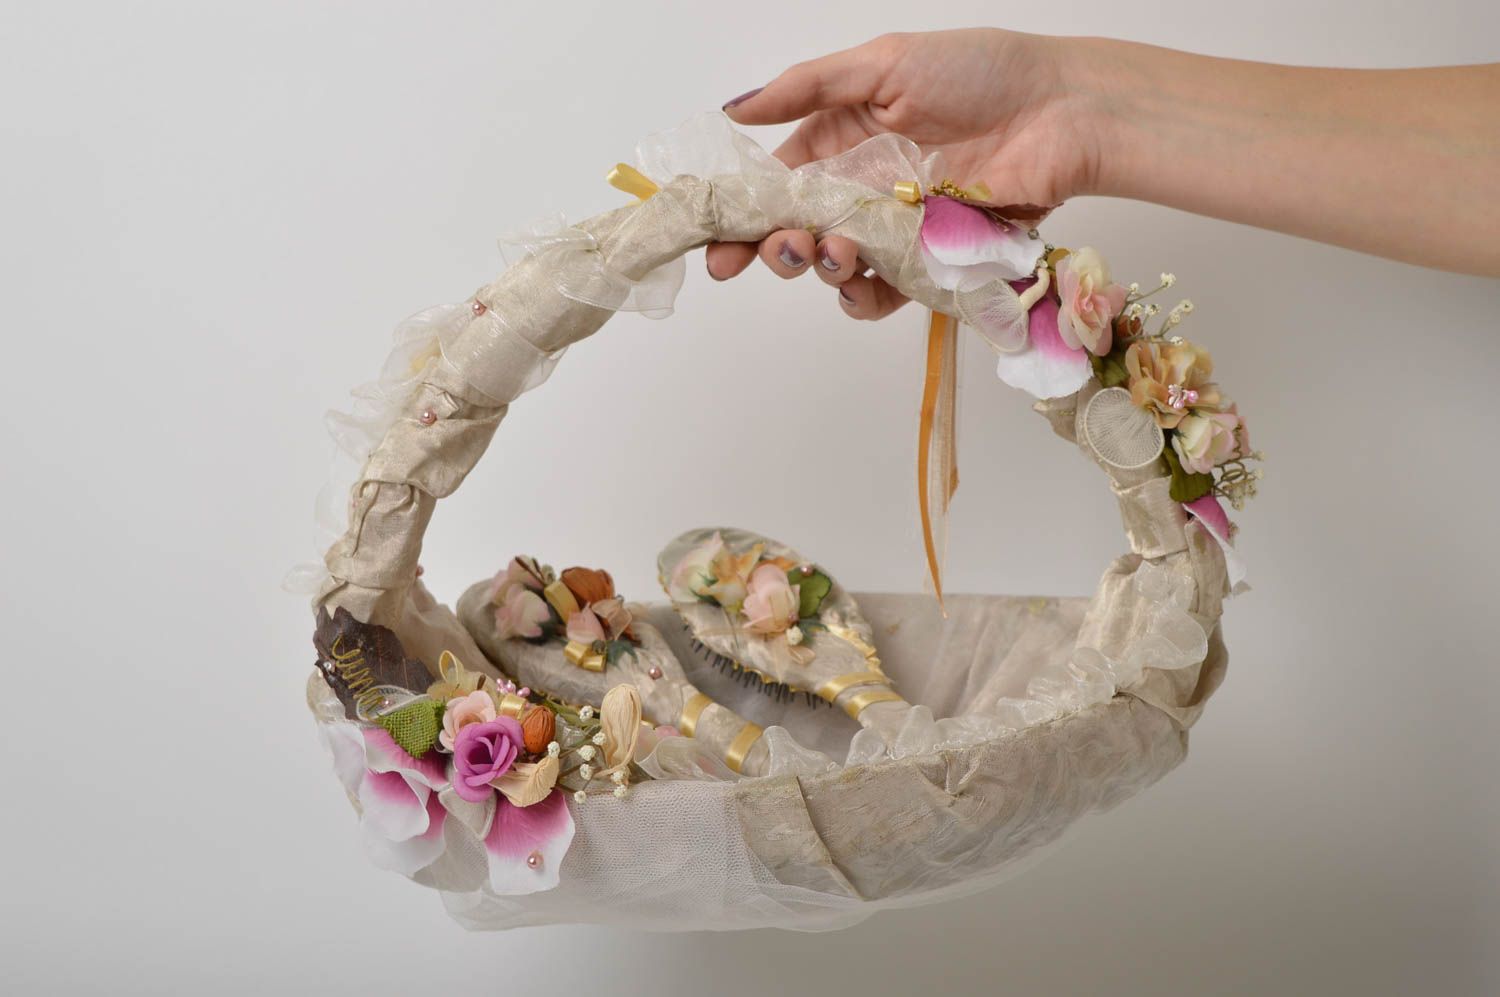 Handmade wedding accessories set flower basket hair brush hand mirror ideas photo 3